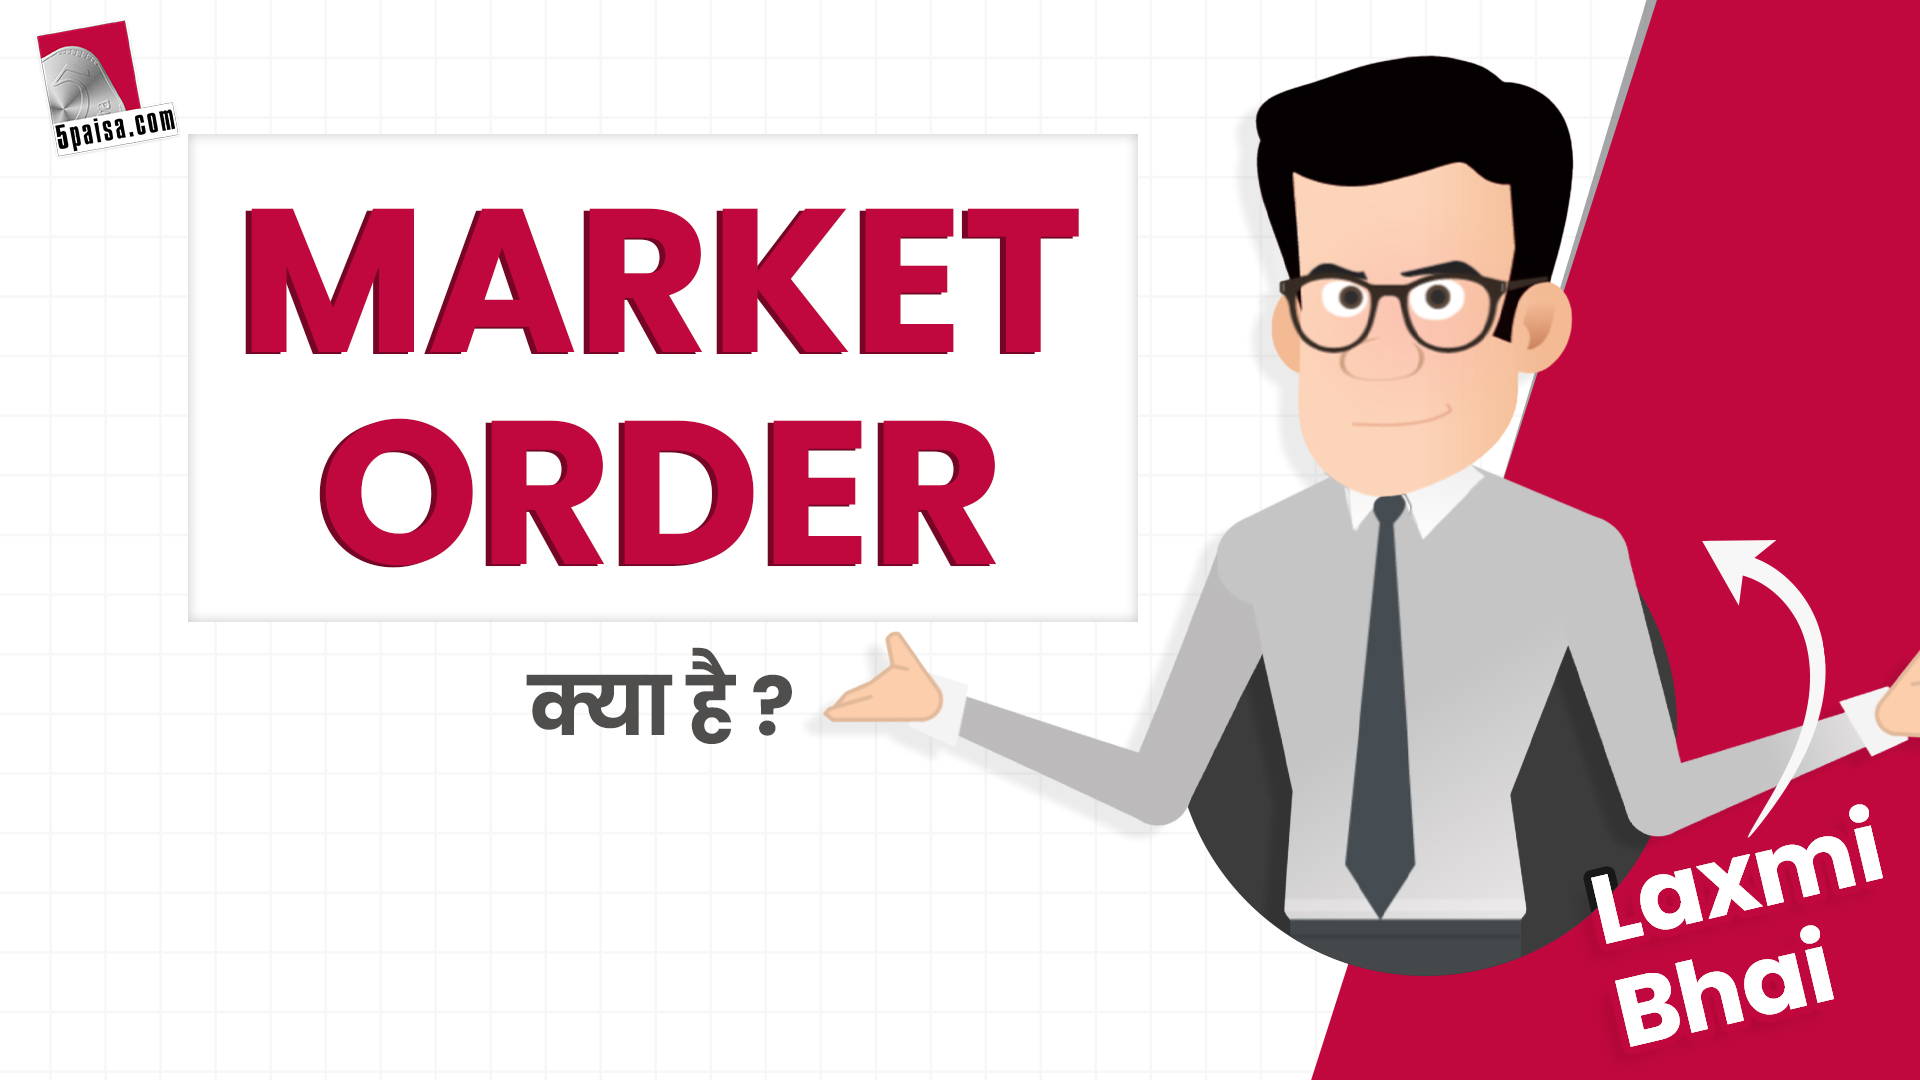 Laxmi Bhai : Stock Market में क्या होता है Market Order? Investors के लिये क्या हैं इसके मायने